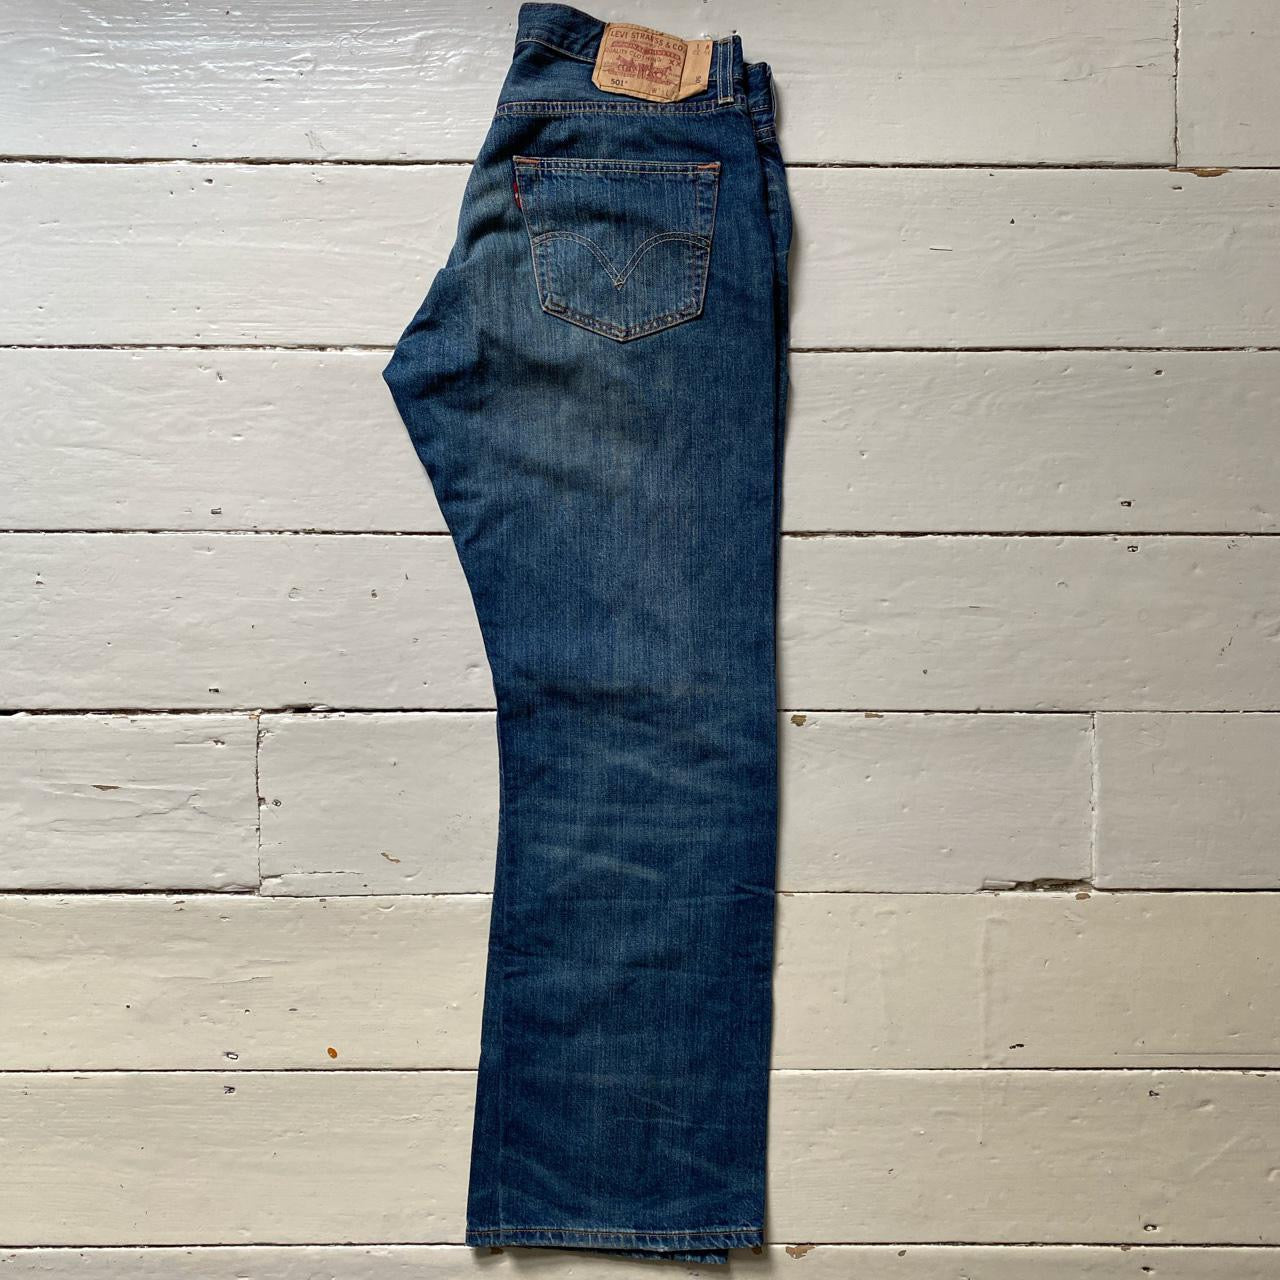 Levis 501 Stonewash Blue Jeans (34/31)